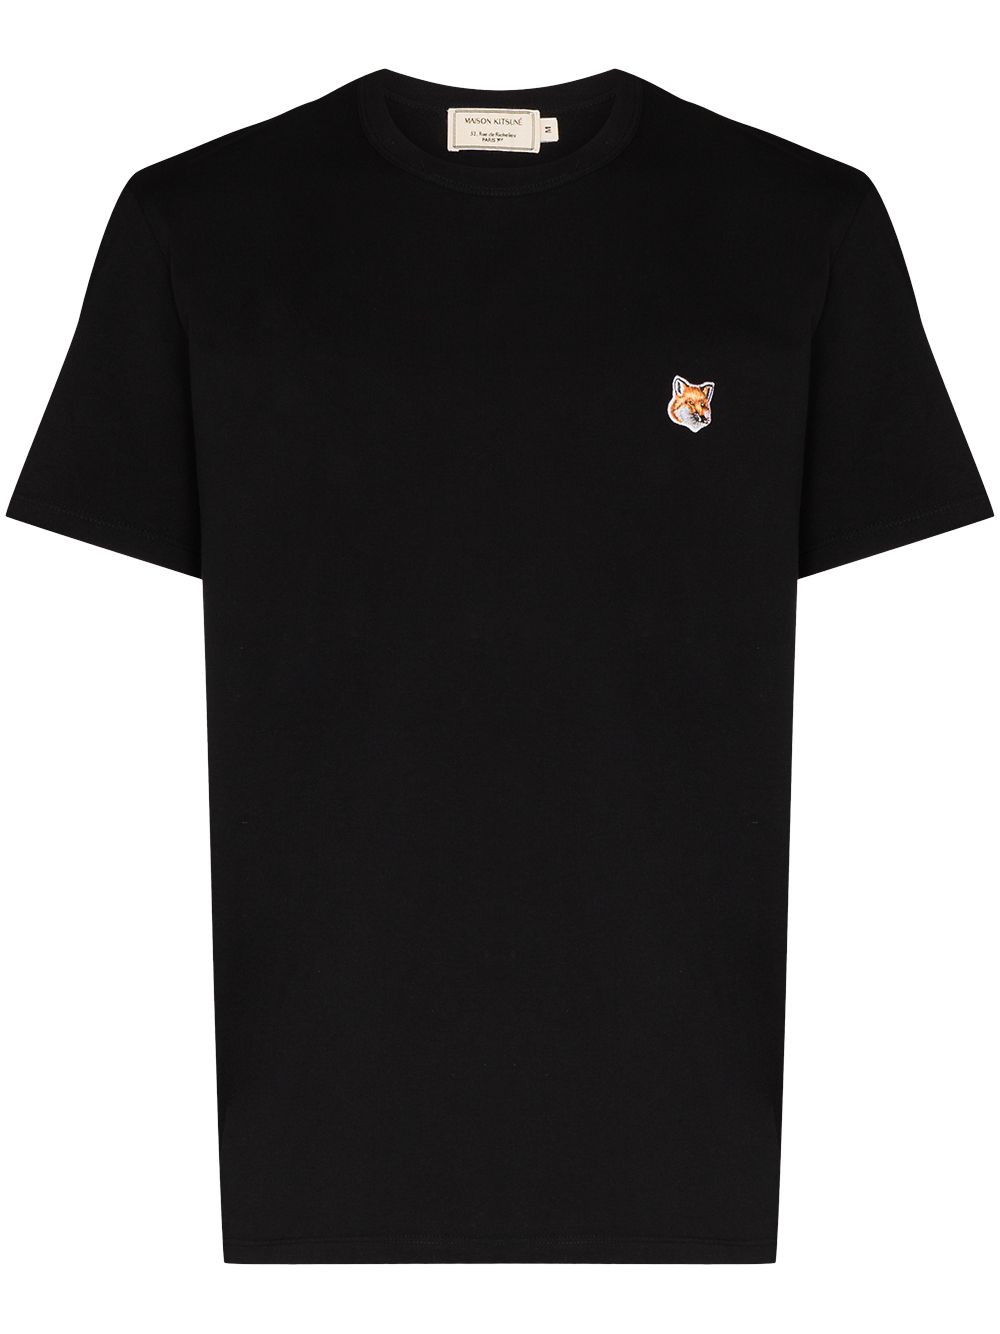 Maison Kitsuné - T-shirt black Fox - Lothaire